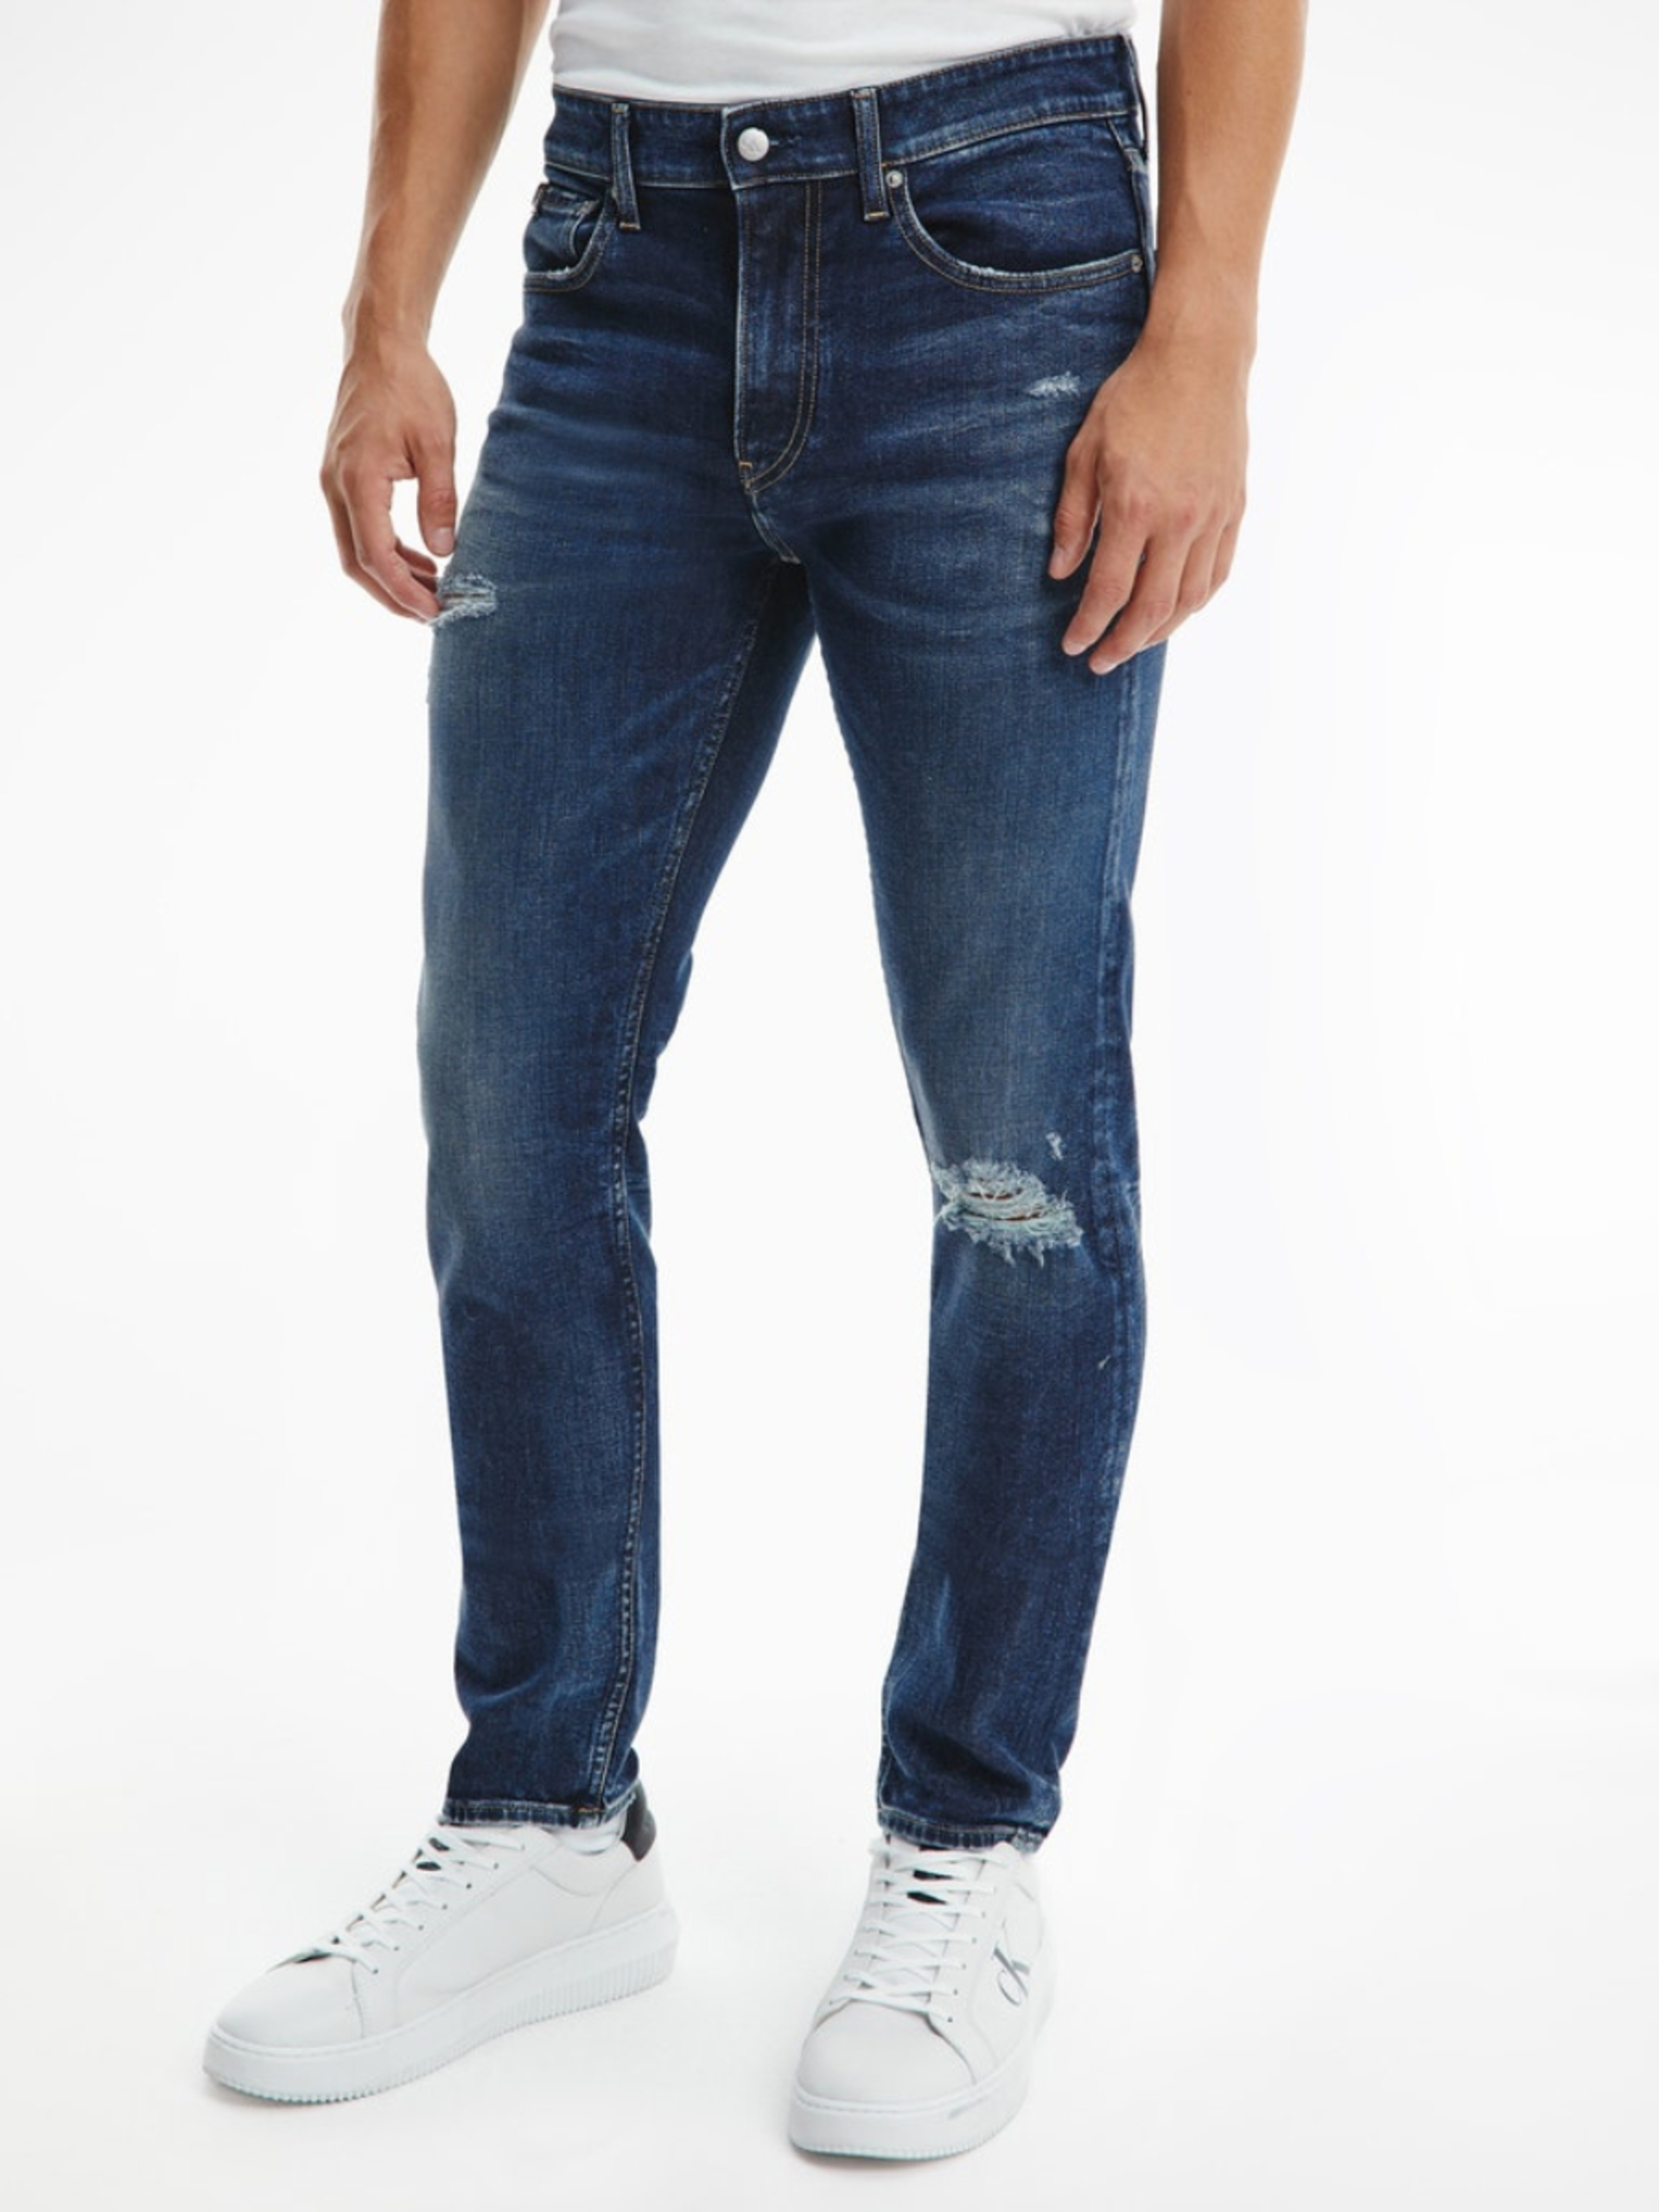 Calvin Klein pánské modré džíny  - 36/34 (1BJ)